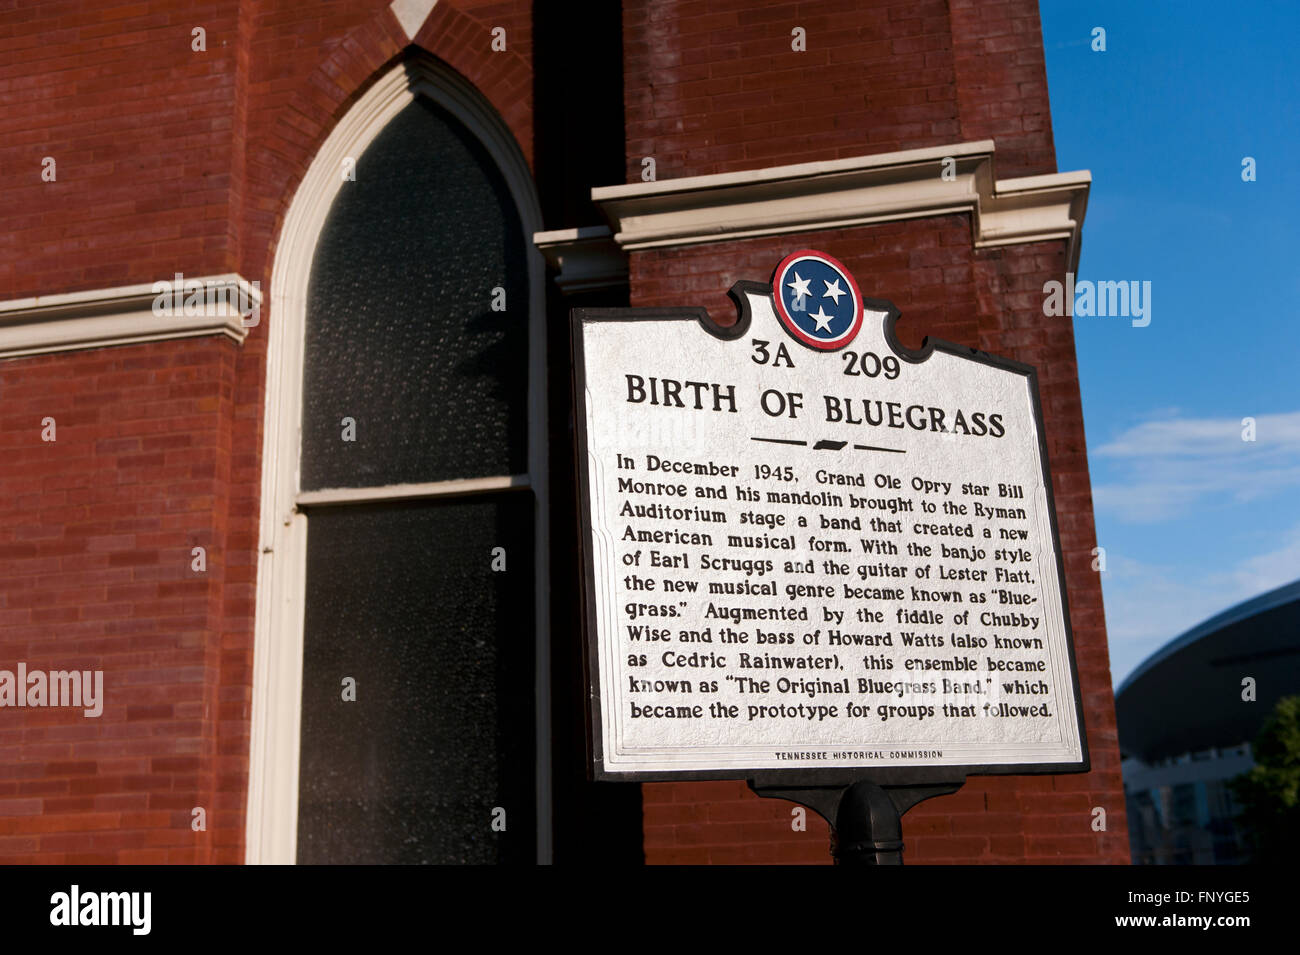 Eine Gedenktafel vor dem Ryman Auditorium in Nashville, Tennessee als die "Heimat des Bluegrass" Musik Gedenken Stockfoto